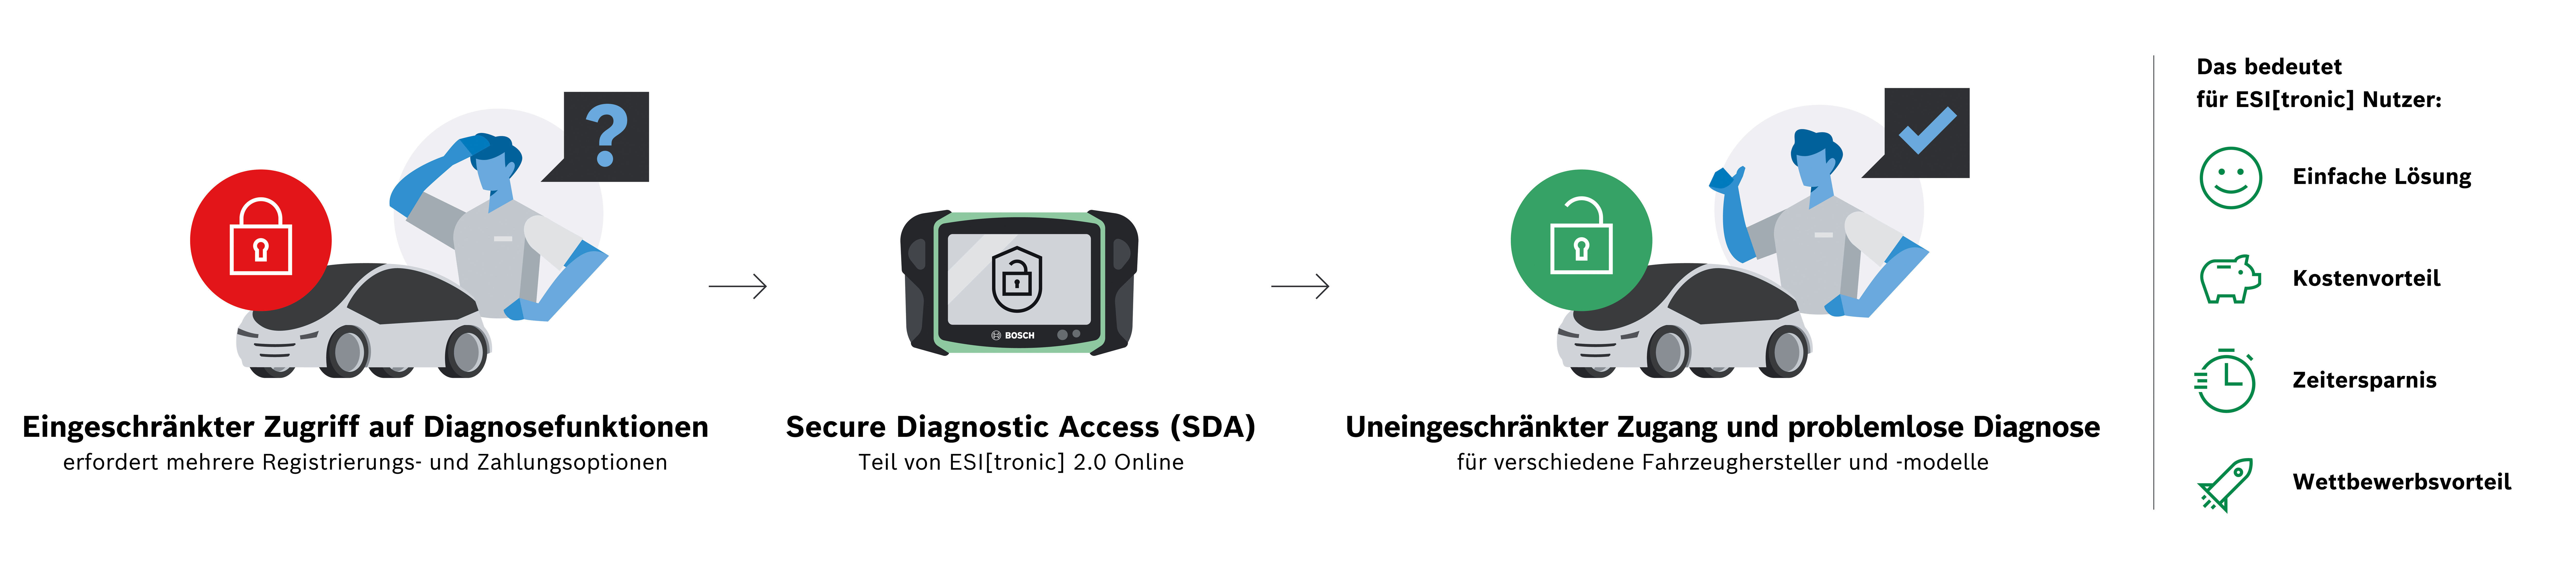 Centrálny prístup k zabezpečeným dátam vozidla pomocou Secure Diagnostic Access (SDA) od spoločnosti Bosch